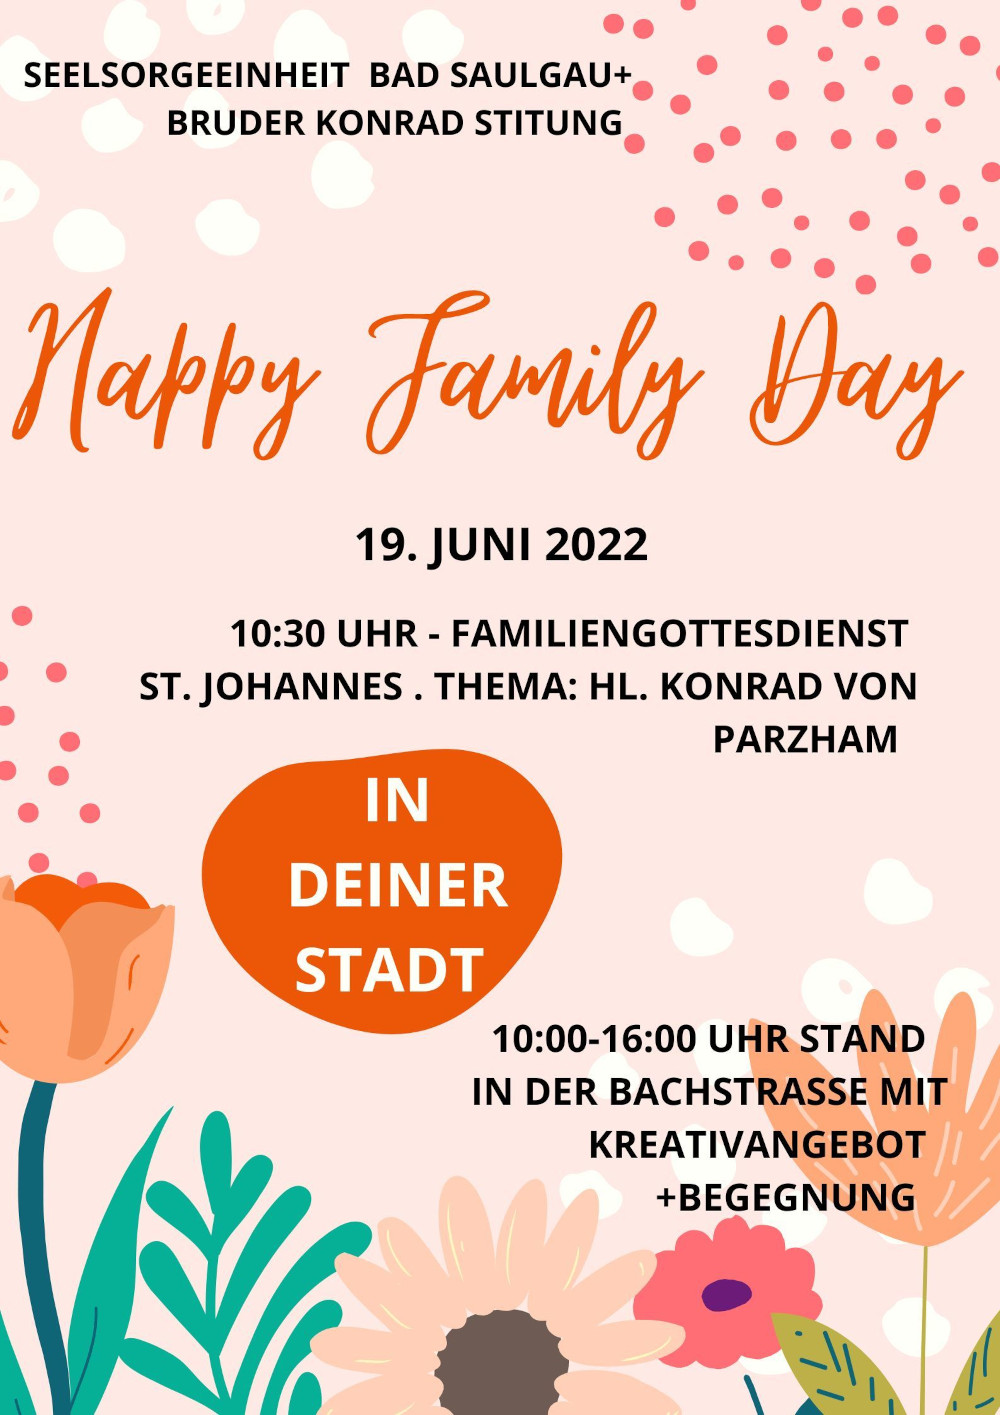 Einladung zum Happy Family Day am 19. Juni 2022 Bad